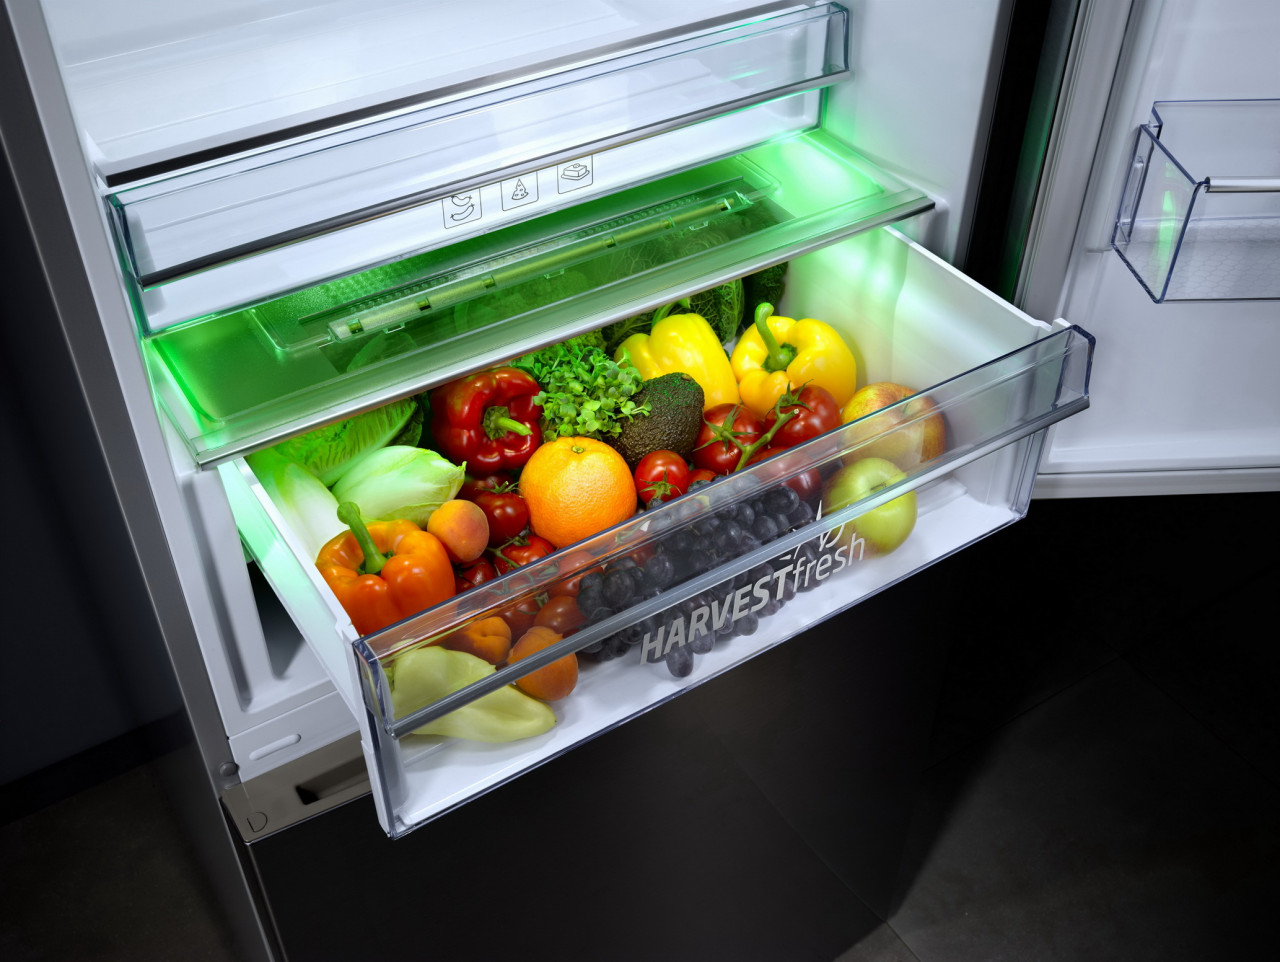 รูปบทความ เคล็ดลับเลือกซื้อตู้เย็นให้คุ้มค่าตอบโจทย์ไลฟ์สไตล์คนรุ่นใหม่